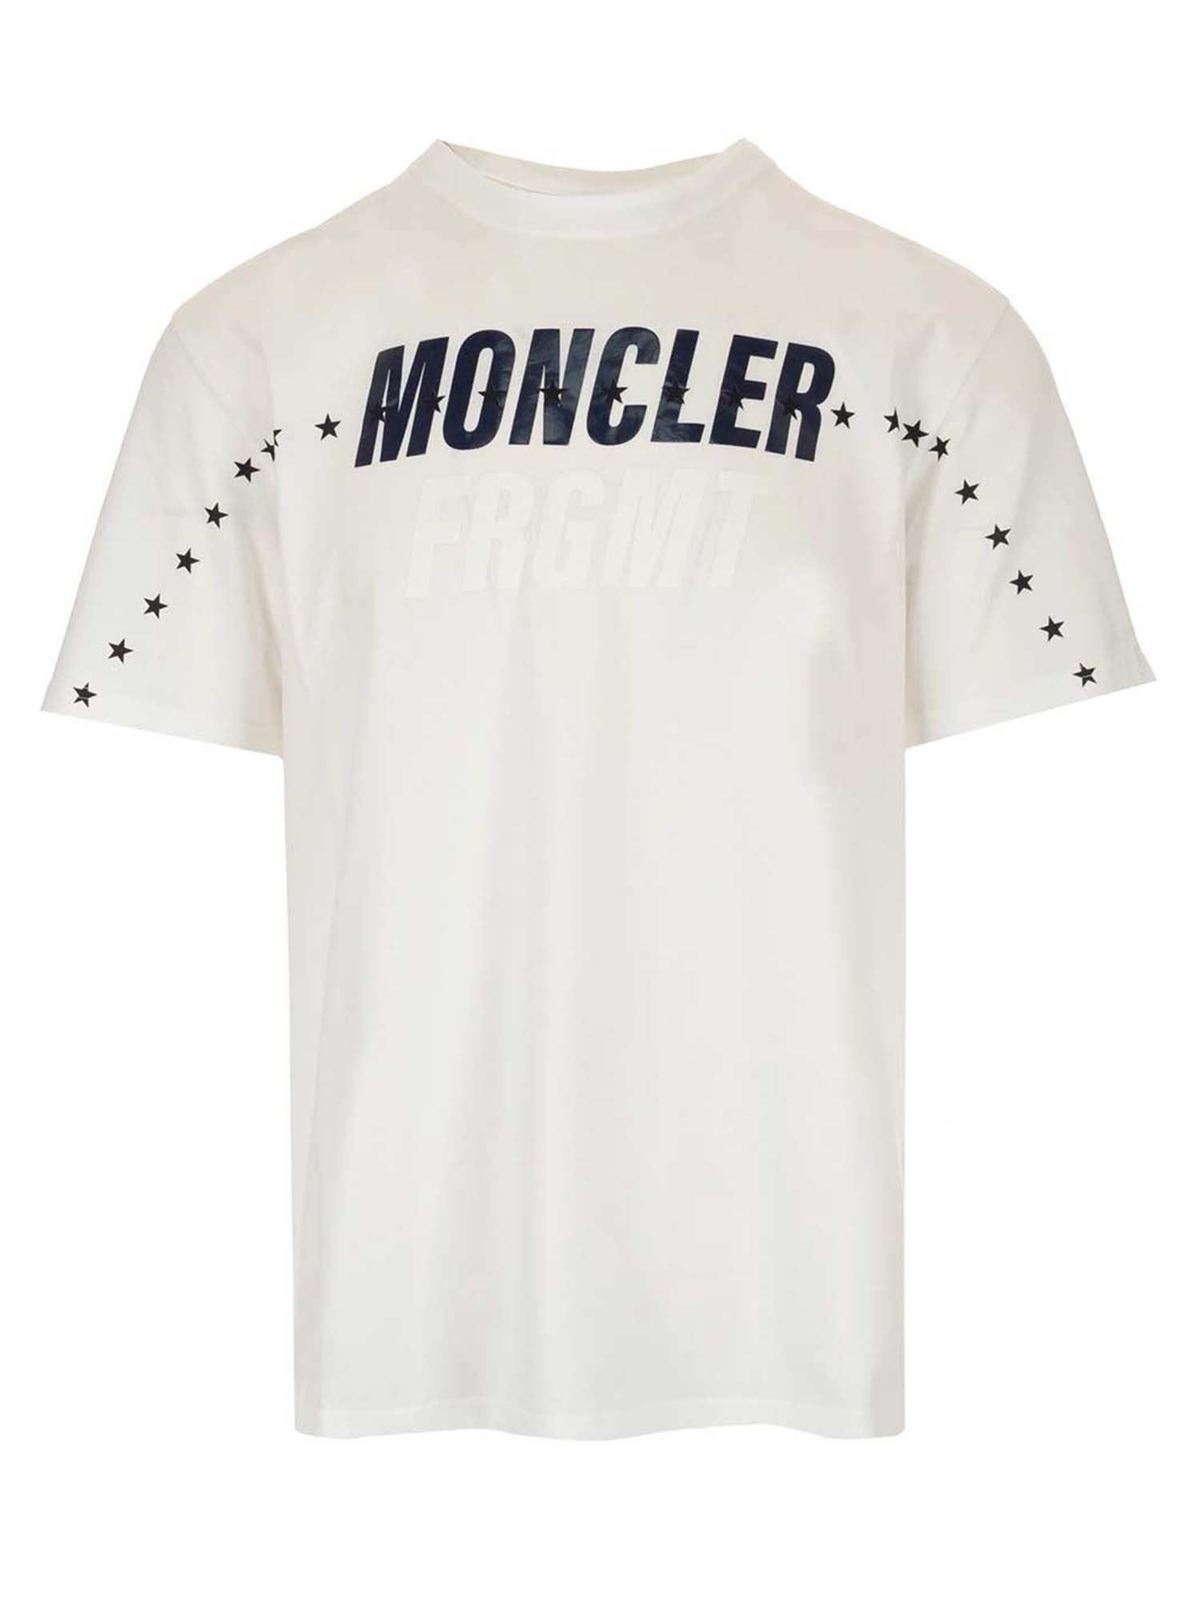 Tシャツ Moncler - Tシャツ - Fragment Hiroshi Fujiwara ...